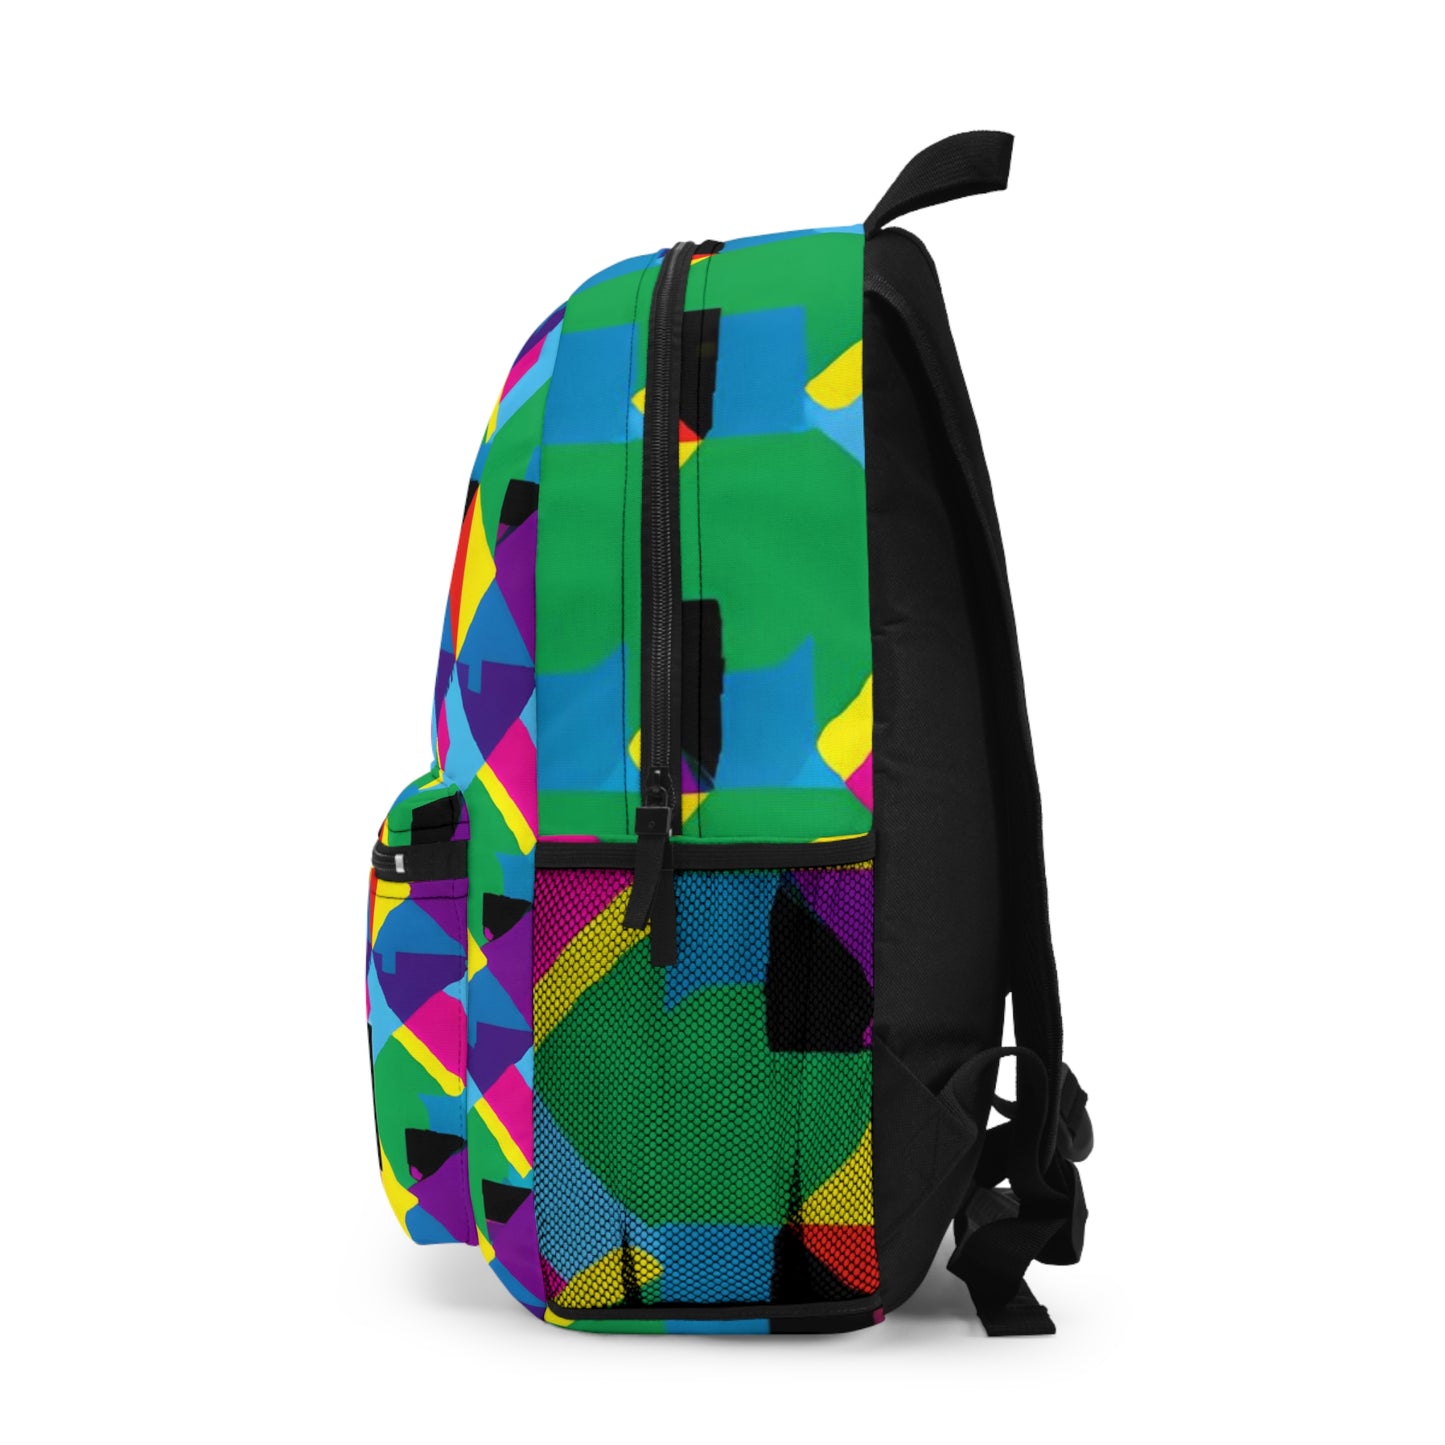 DebonairDiva - Gay Pride Backpack